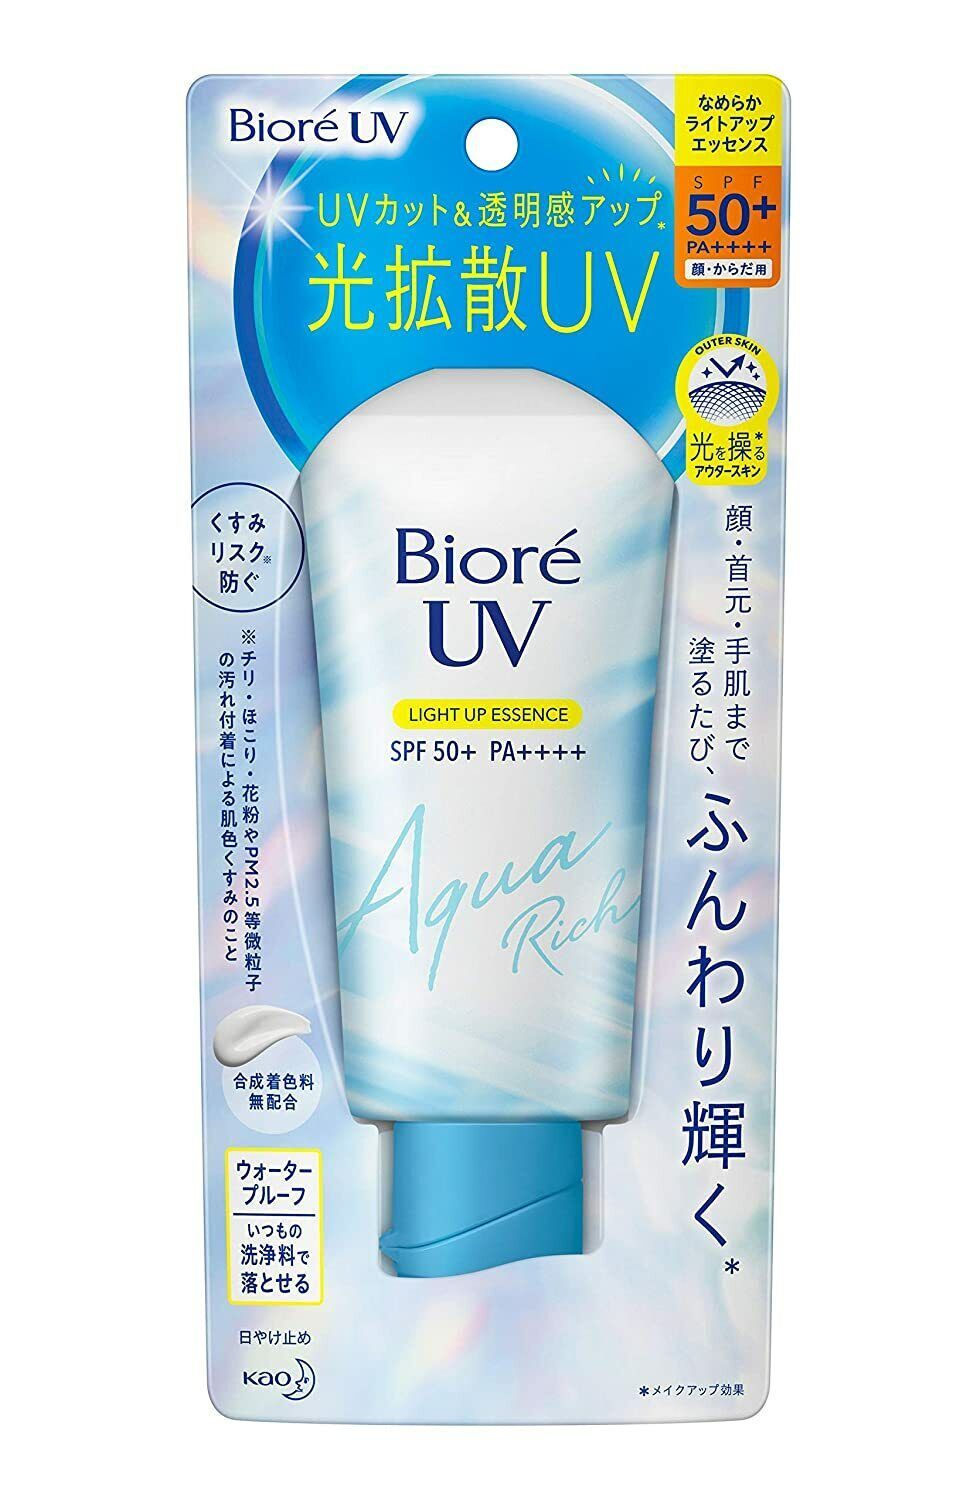 Primary image for Biore UV Aqua Riche Illumine Essence 70g SPF50 Pa Crème Solaire